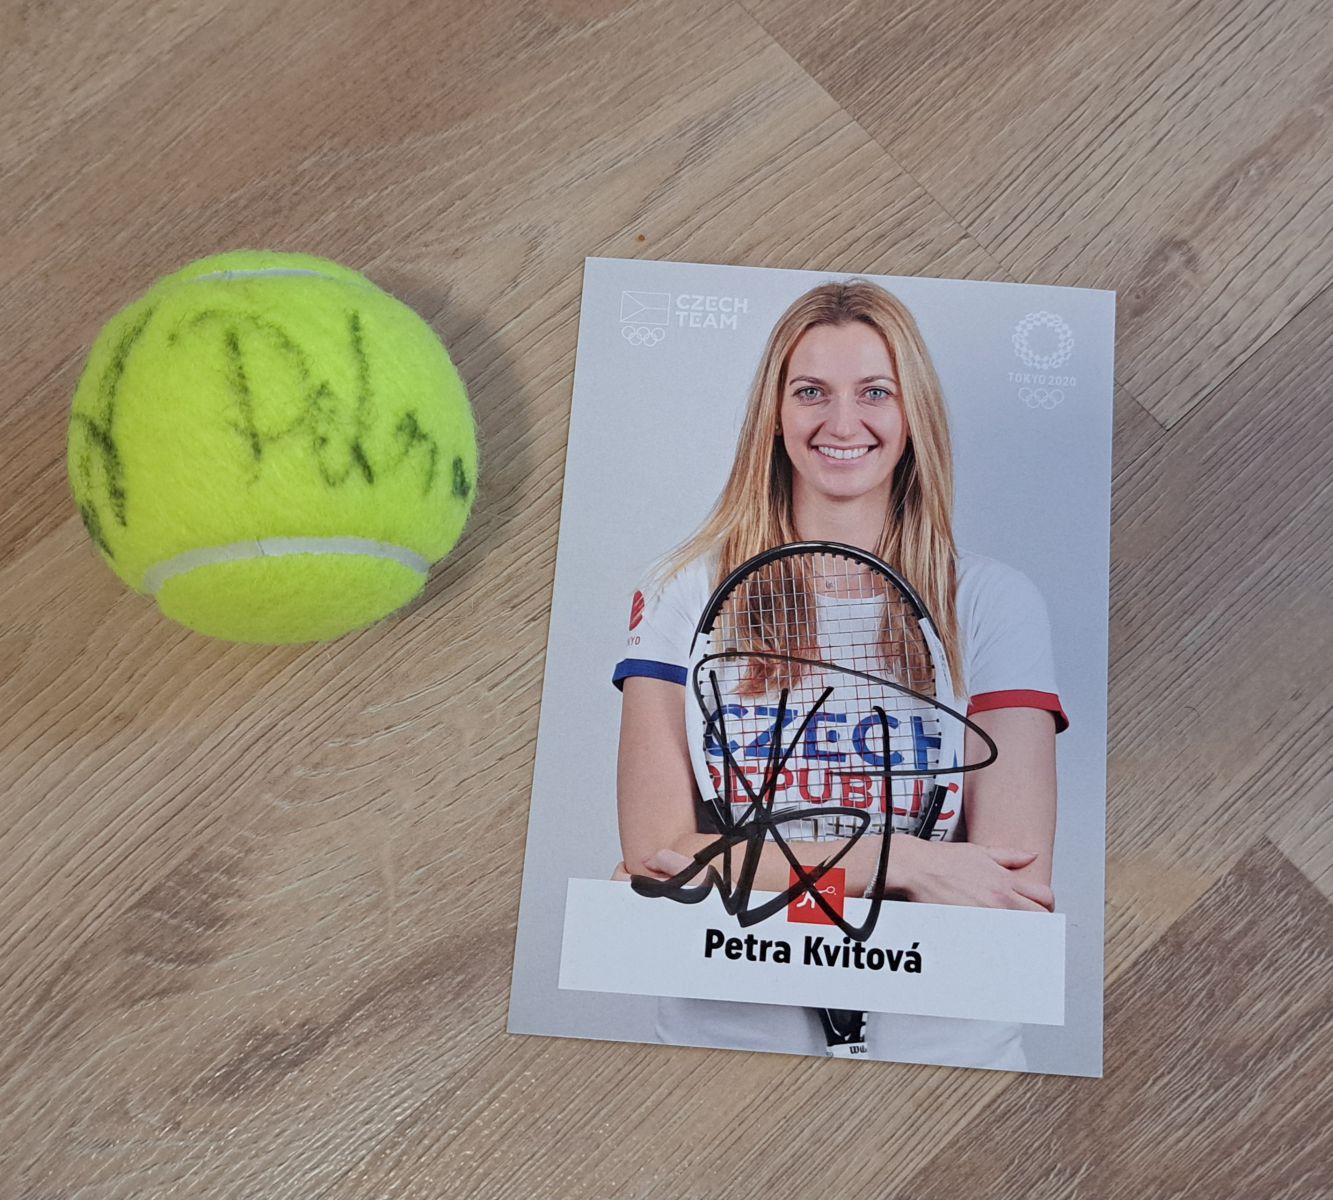 Petra Kvitová - podepsaný míč a karta photo